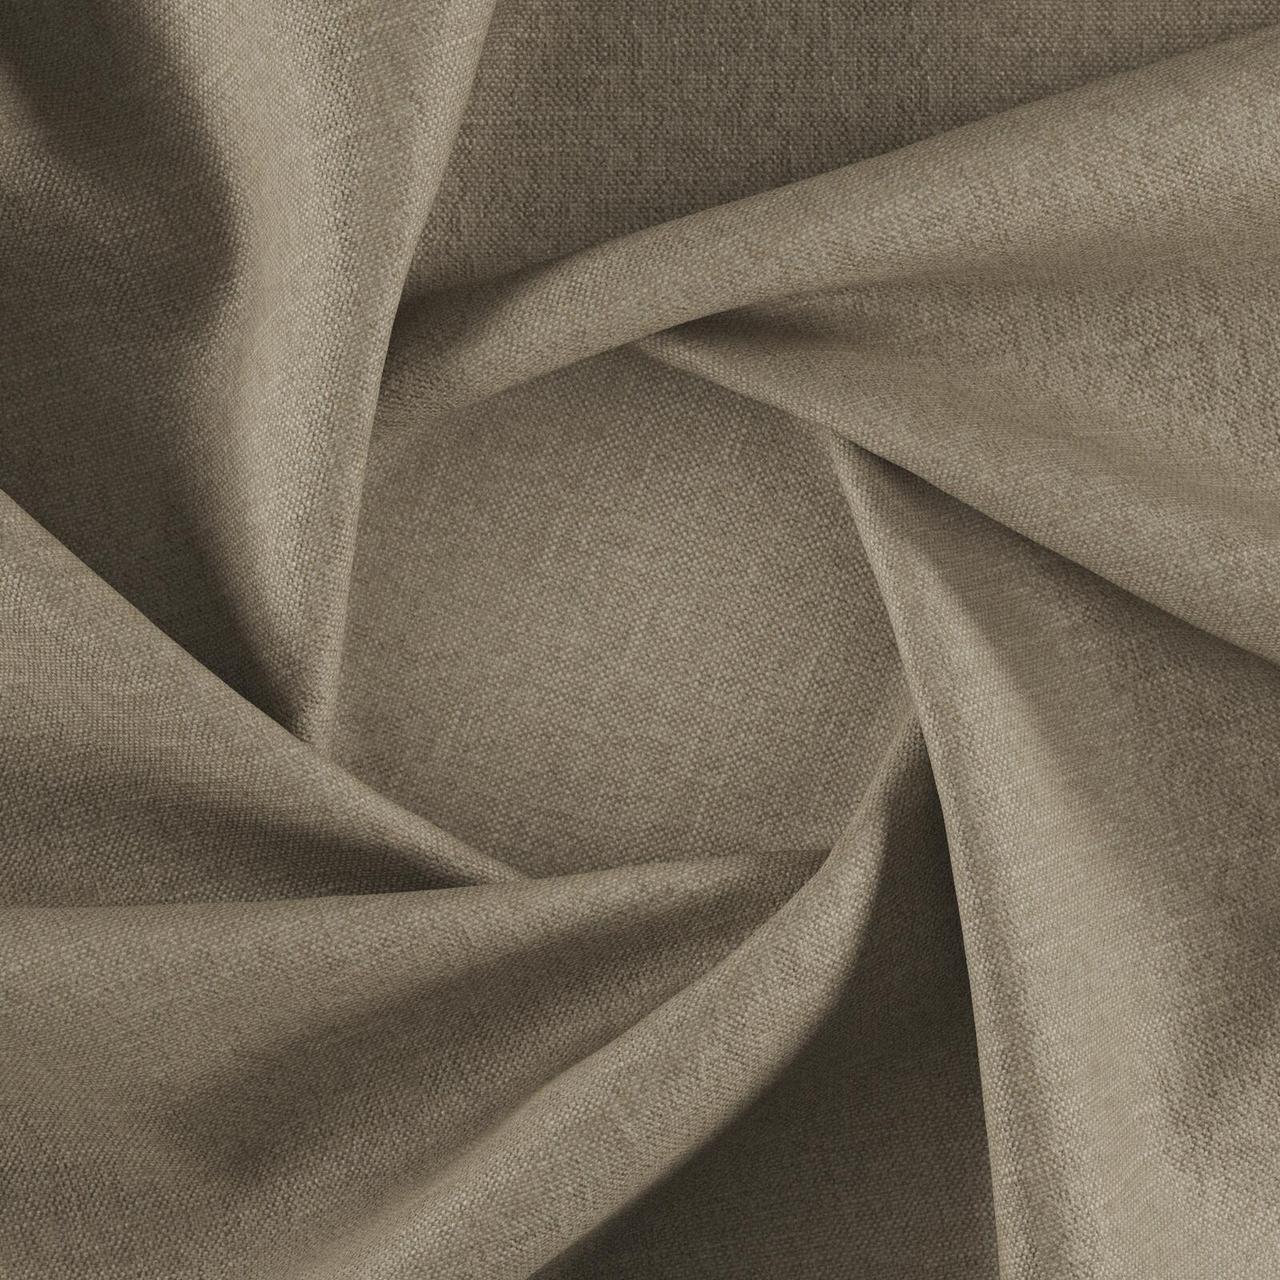 Тканина для перетяжки м'яких меблів шеніл Перфекто (Perfecto) сіро-бежевого кольору